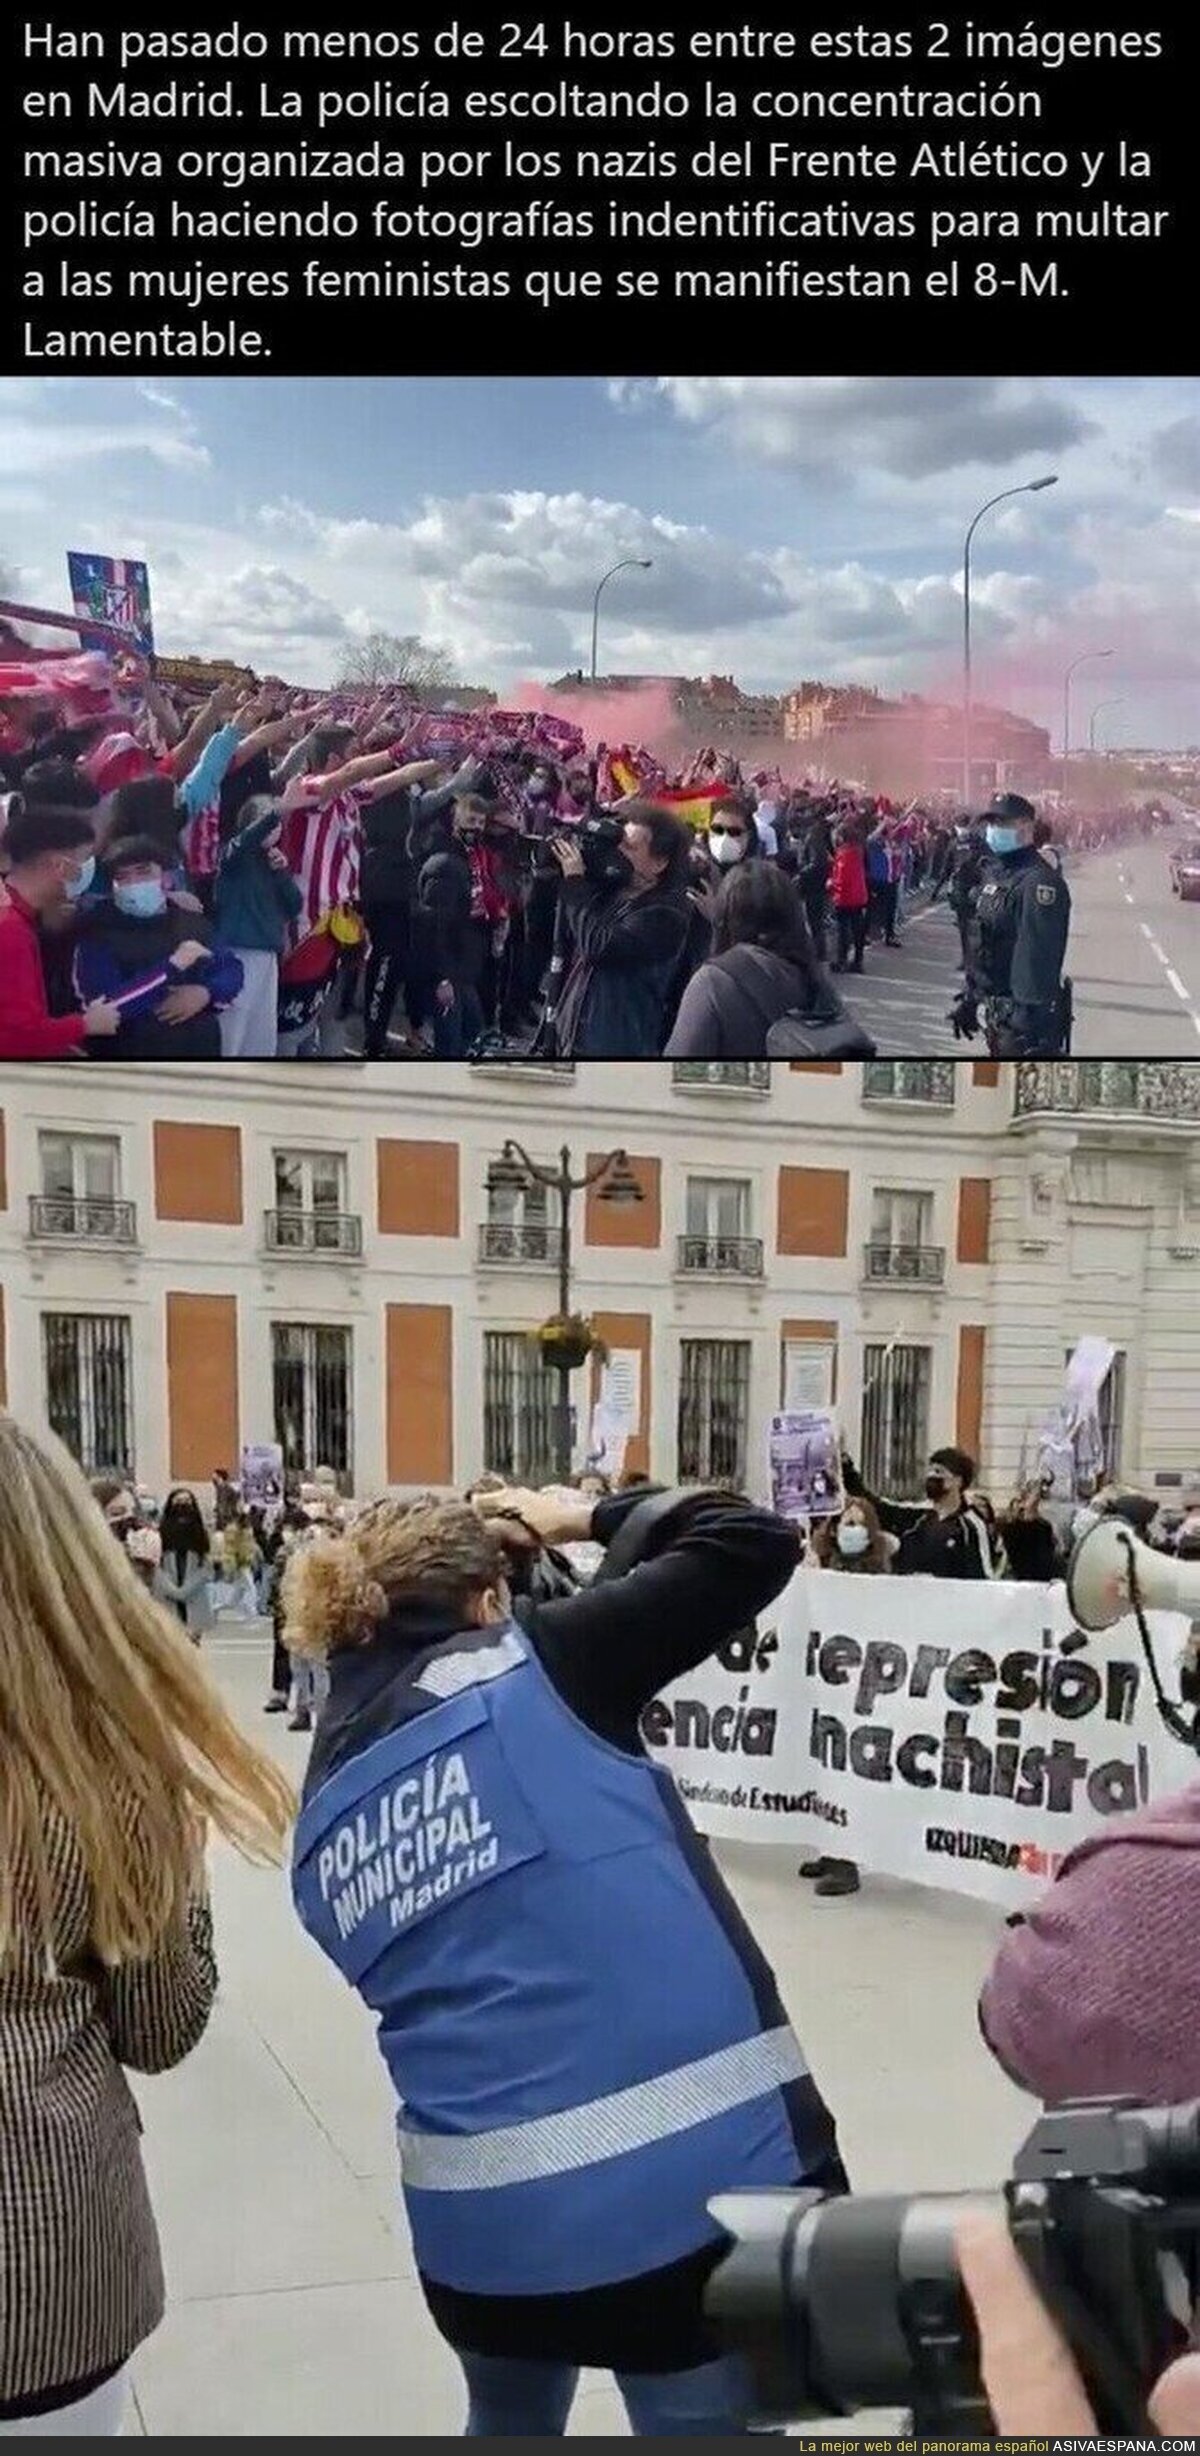 Lo que pasa en Madrid es incréible